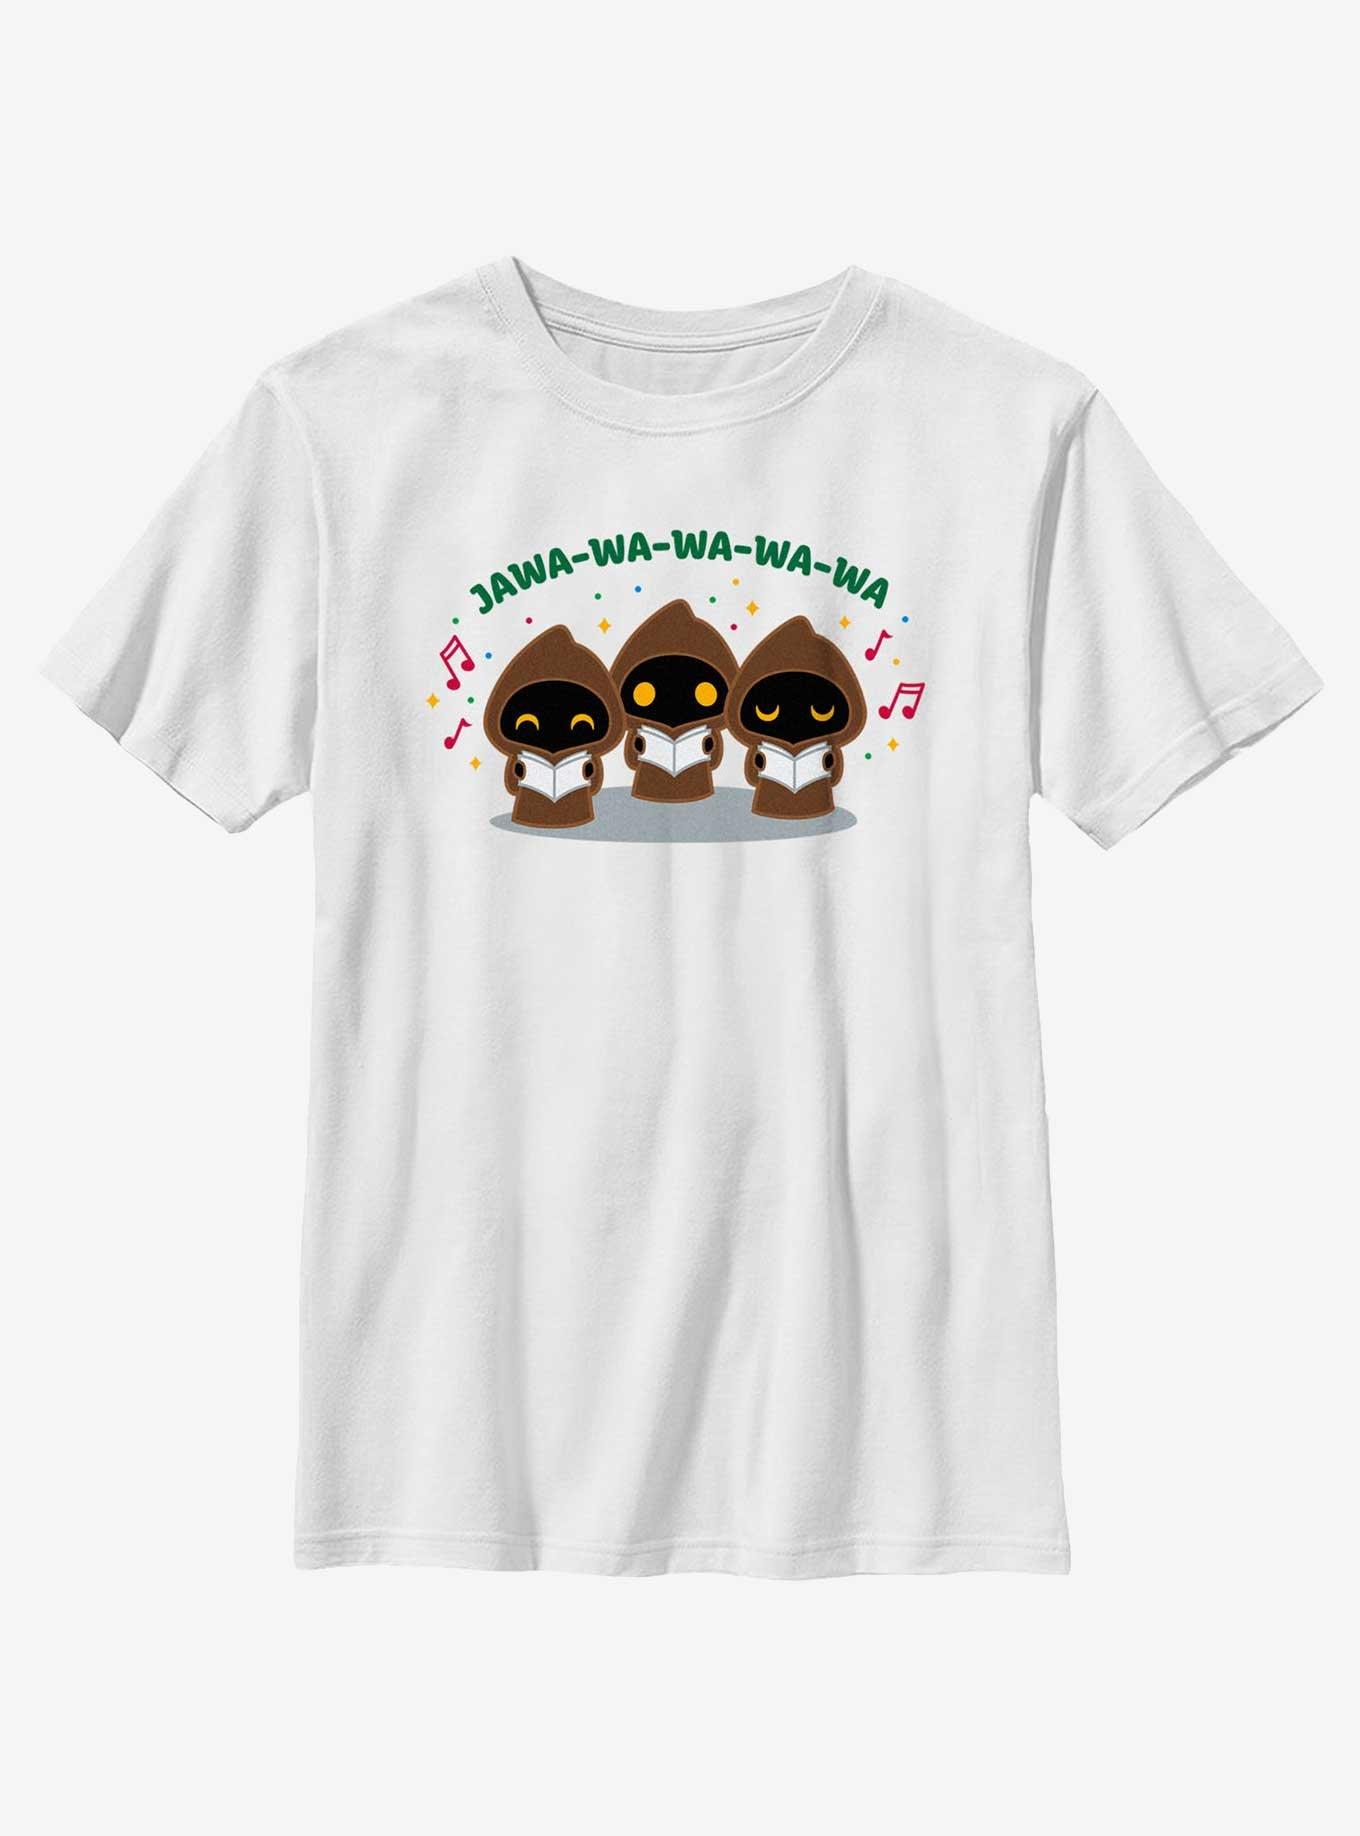 Star Wars Jawa Carolers Youth T-Shirt, WHITE, hi-res